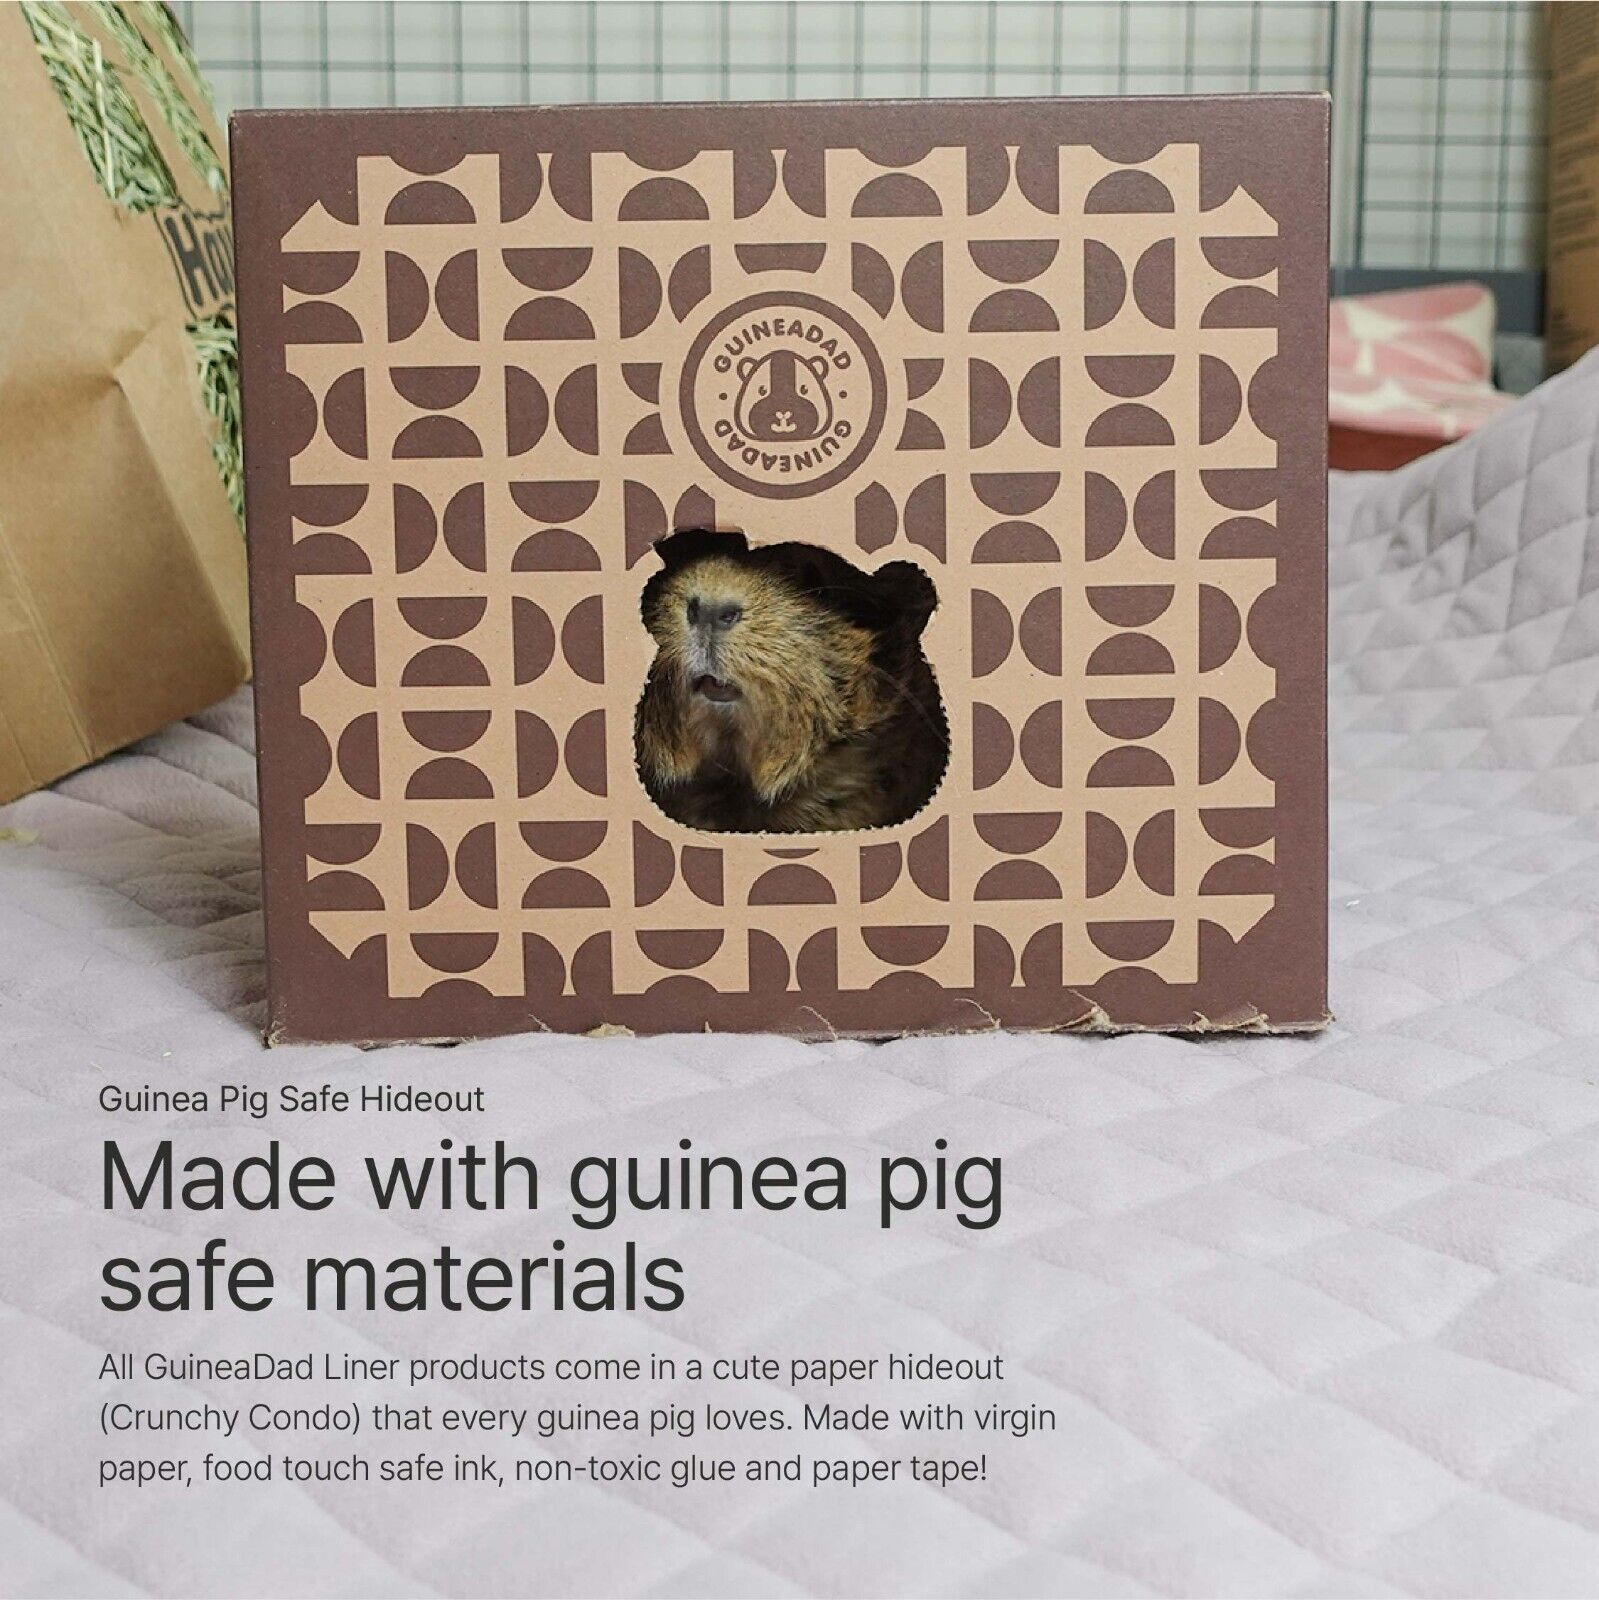 GuineaDad Liner | Guinea Pig Fleece Cage Liners | Guinea Pig Bedding GuineaDad - фотография #14